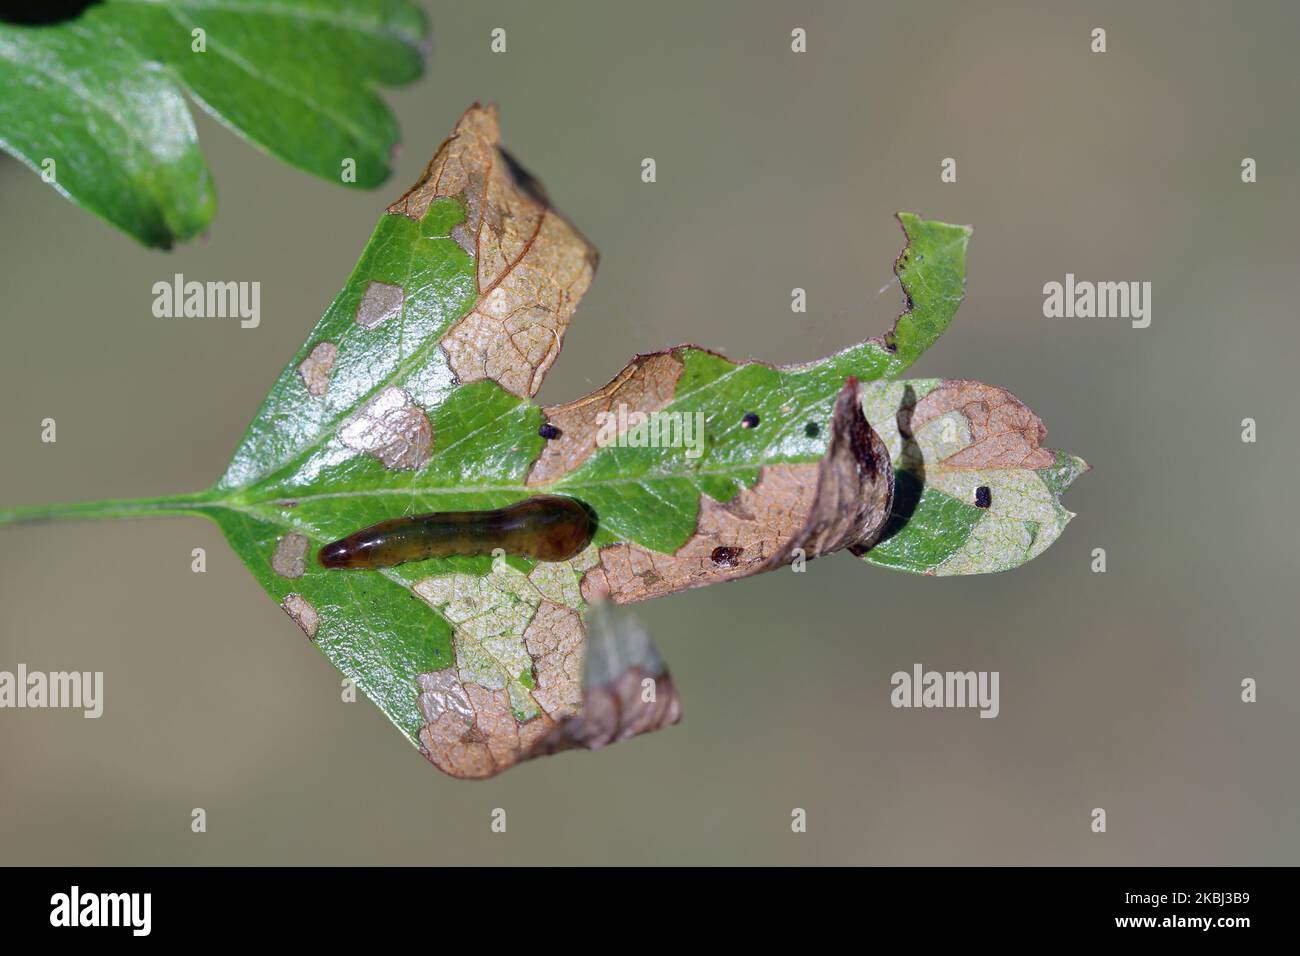 Larves, vers-taupe de la mouche Caliroa varipes se nourrissant sur le dessous d'une feuille d'aubépine. Veines des feuilles visibles. Sous-famille Heterarthrinae. Banque D'Images